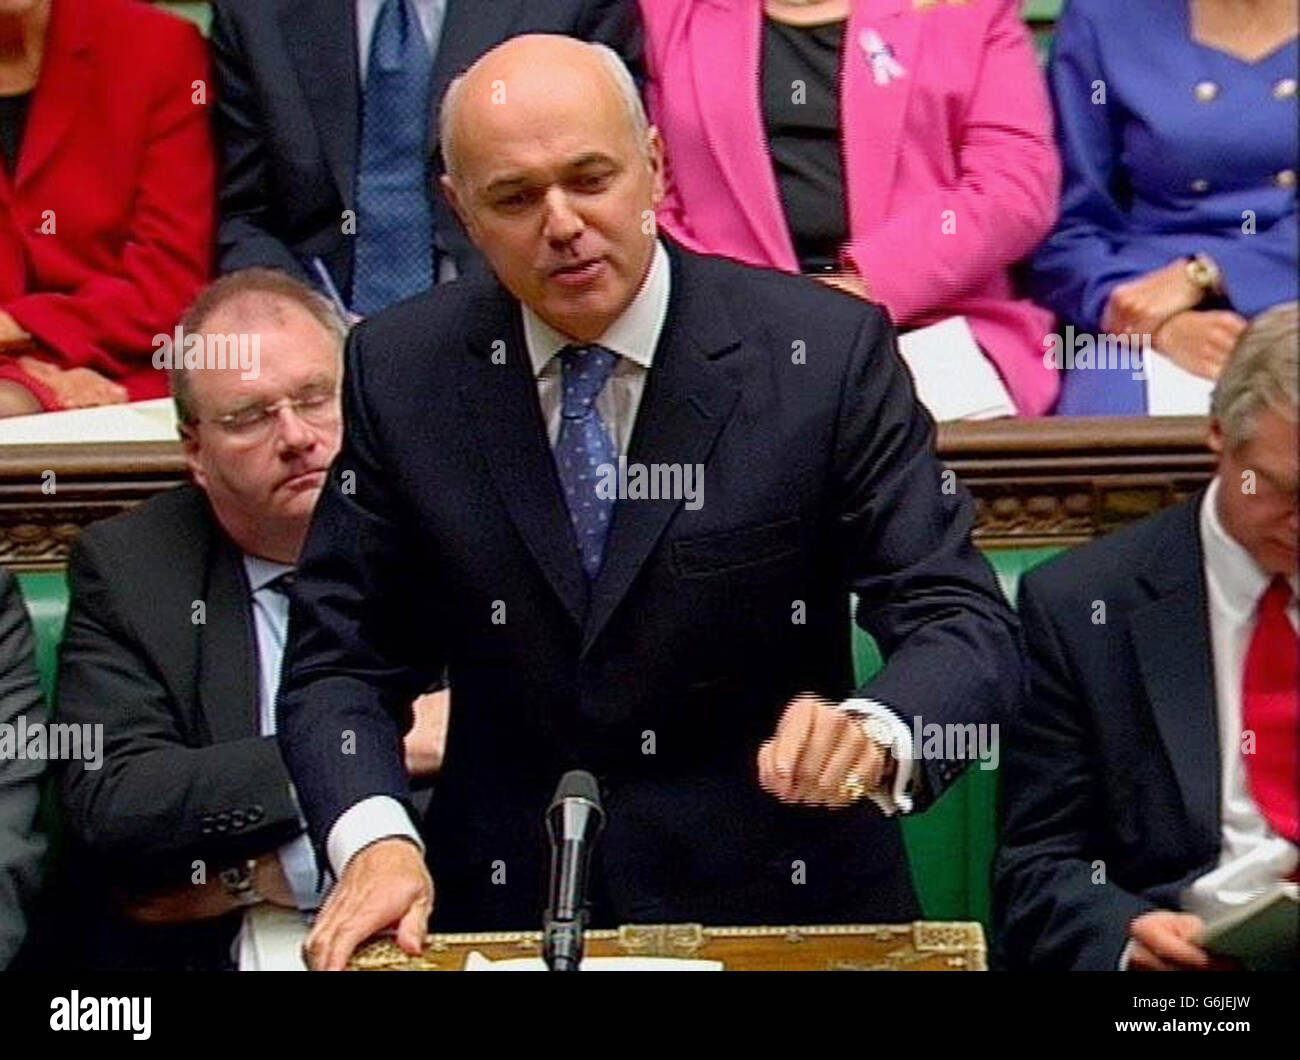 Capture vidéo du chef de l'opposition, Iain Duncan Smith, parlant à la Chambre des communes, à Londres, pendant les questions du premier ministre. Banque D'Images